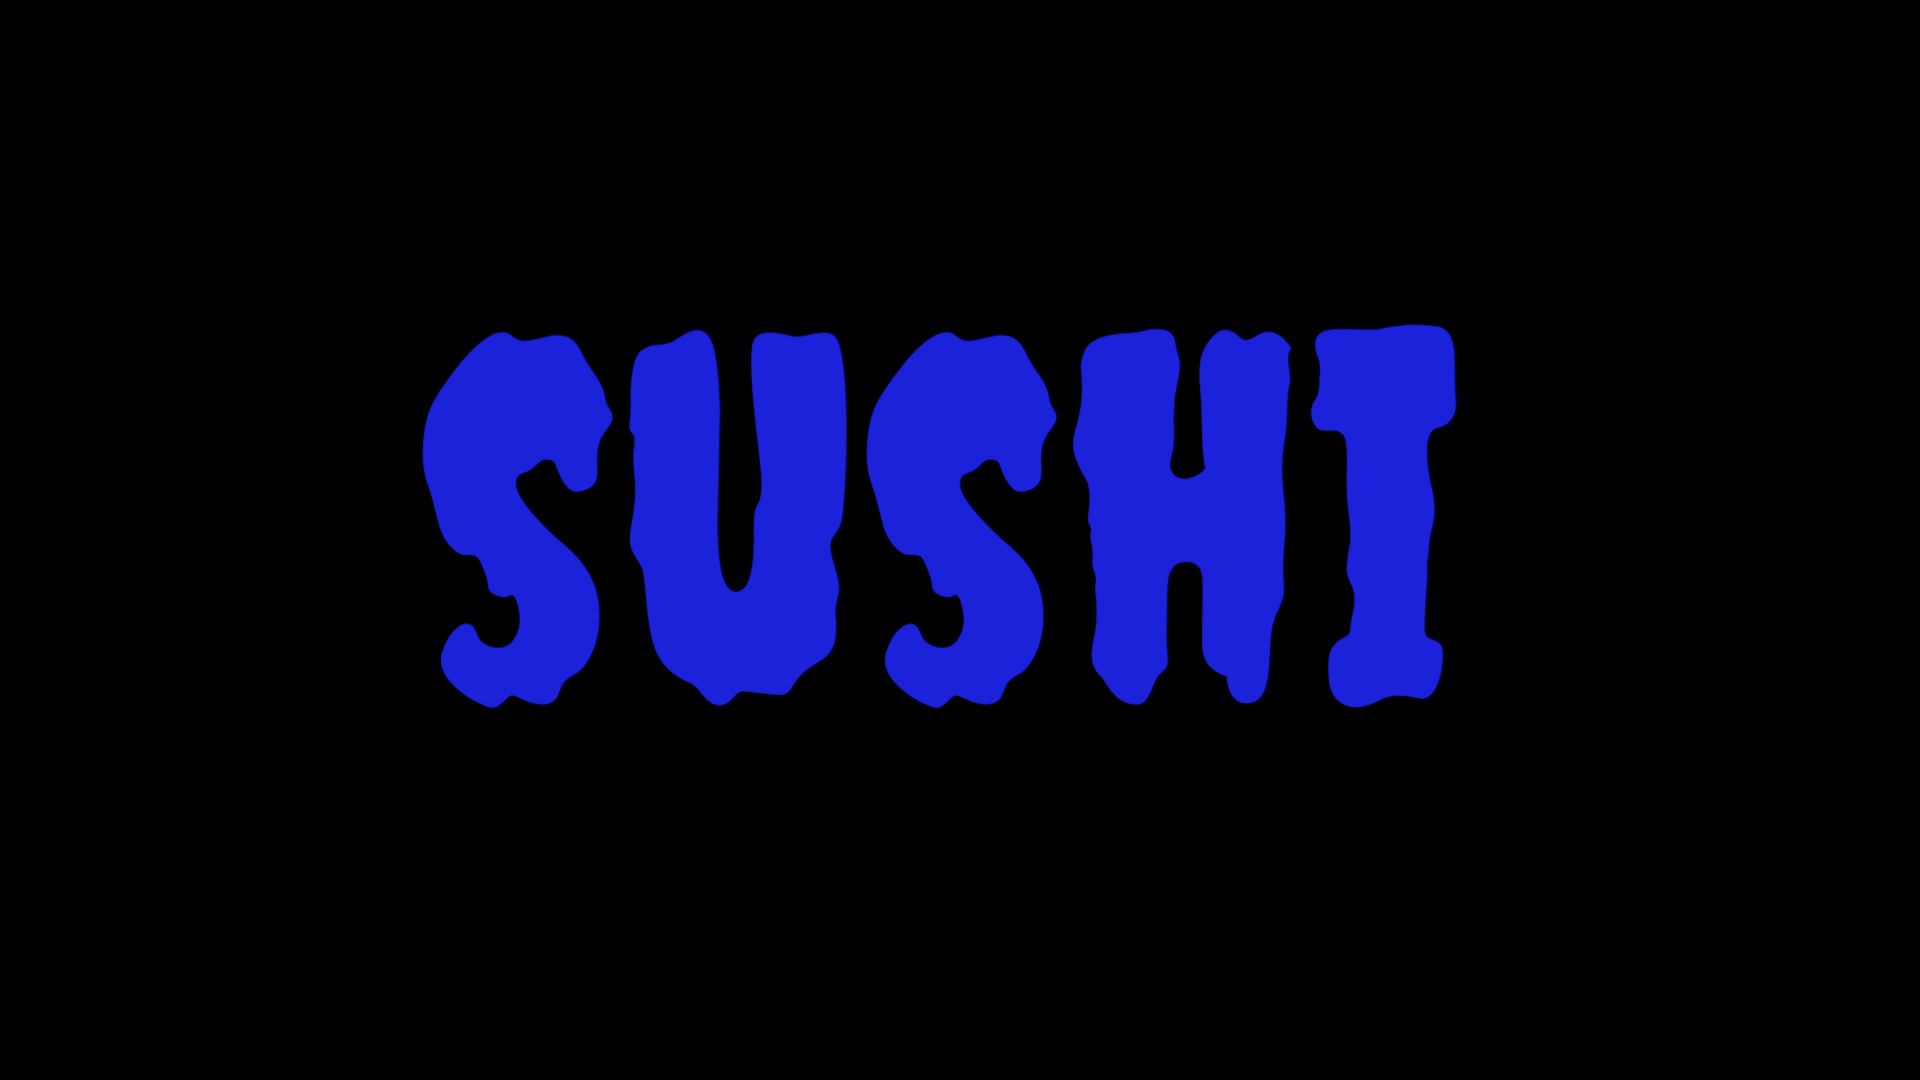 @cryptowingnut/sushi